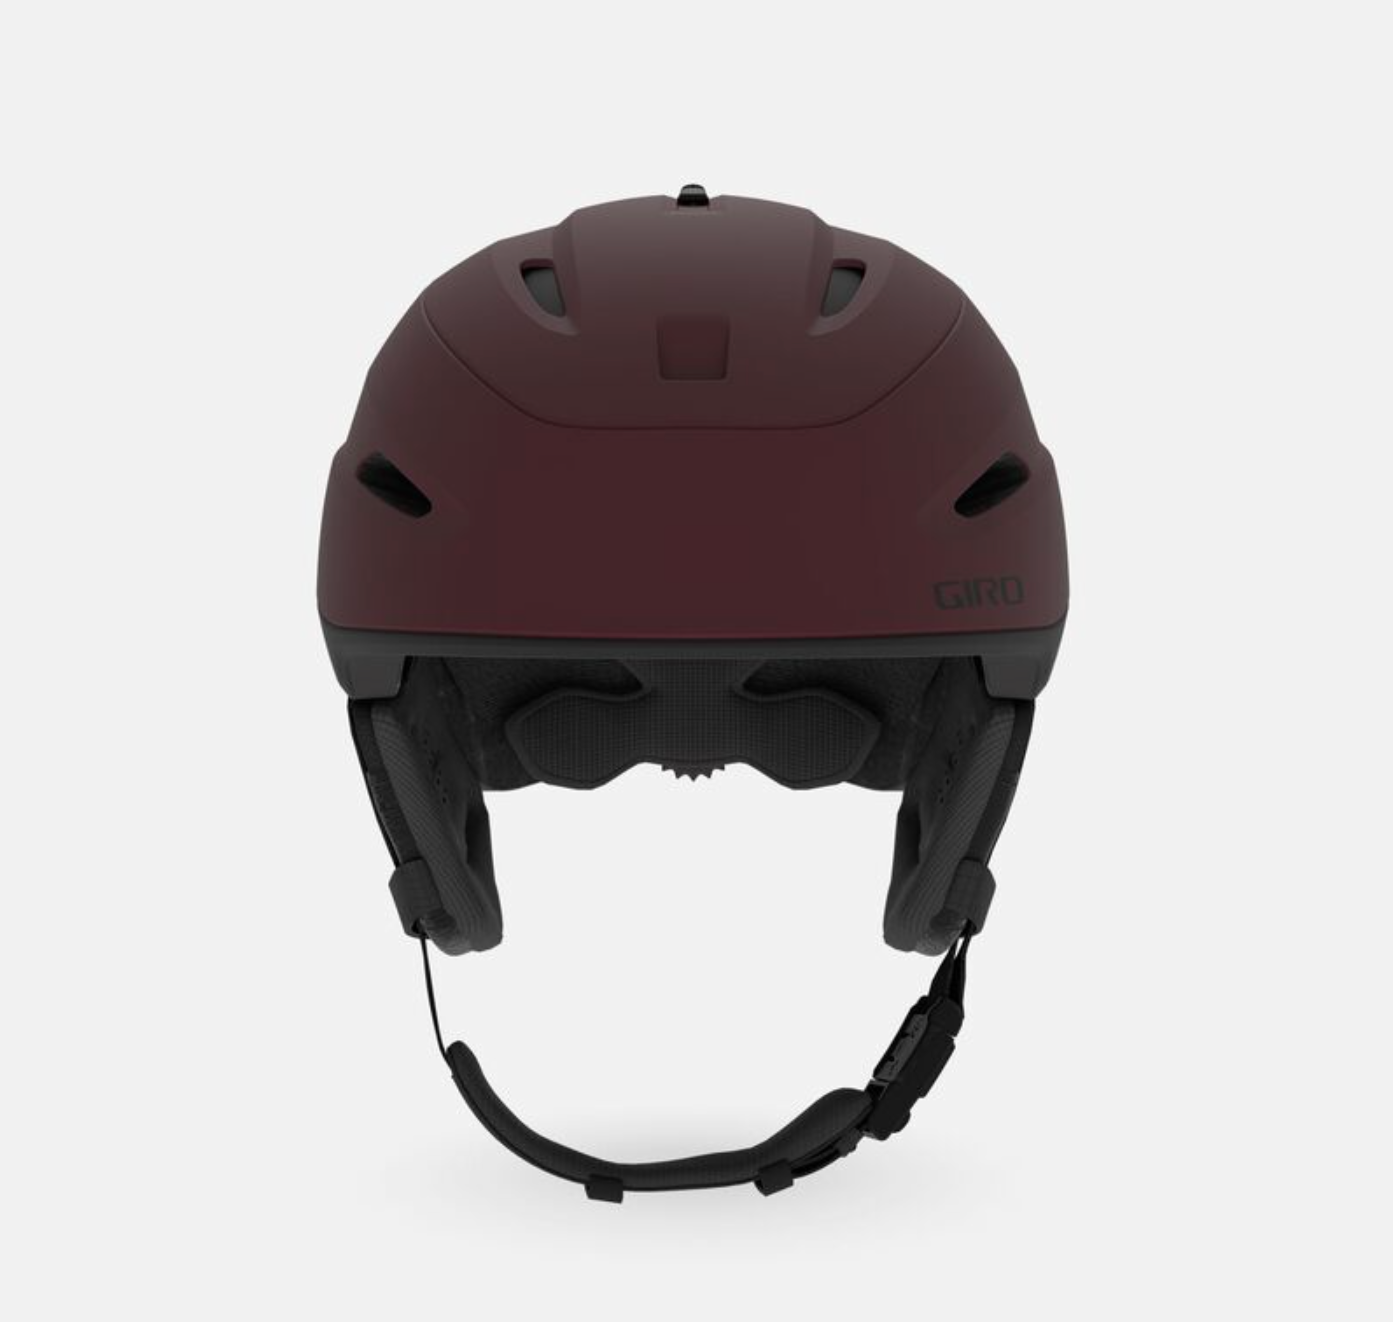 Giro Zone Mips Helmet